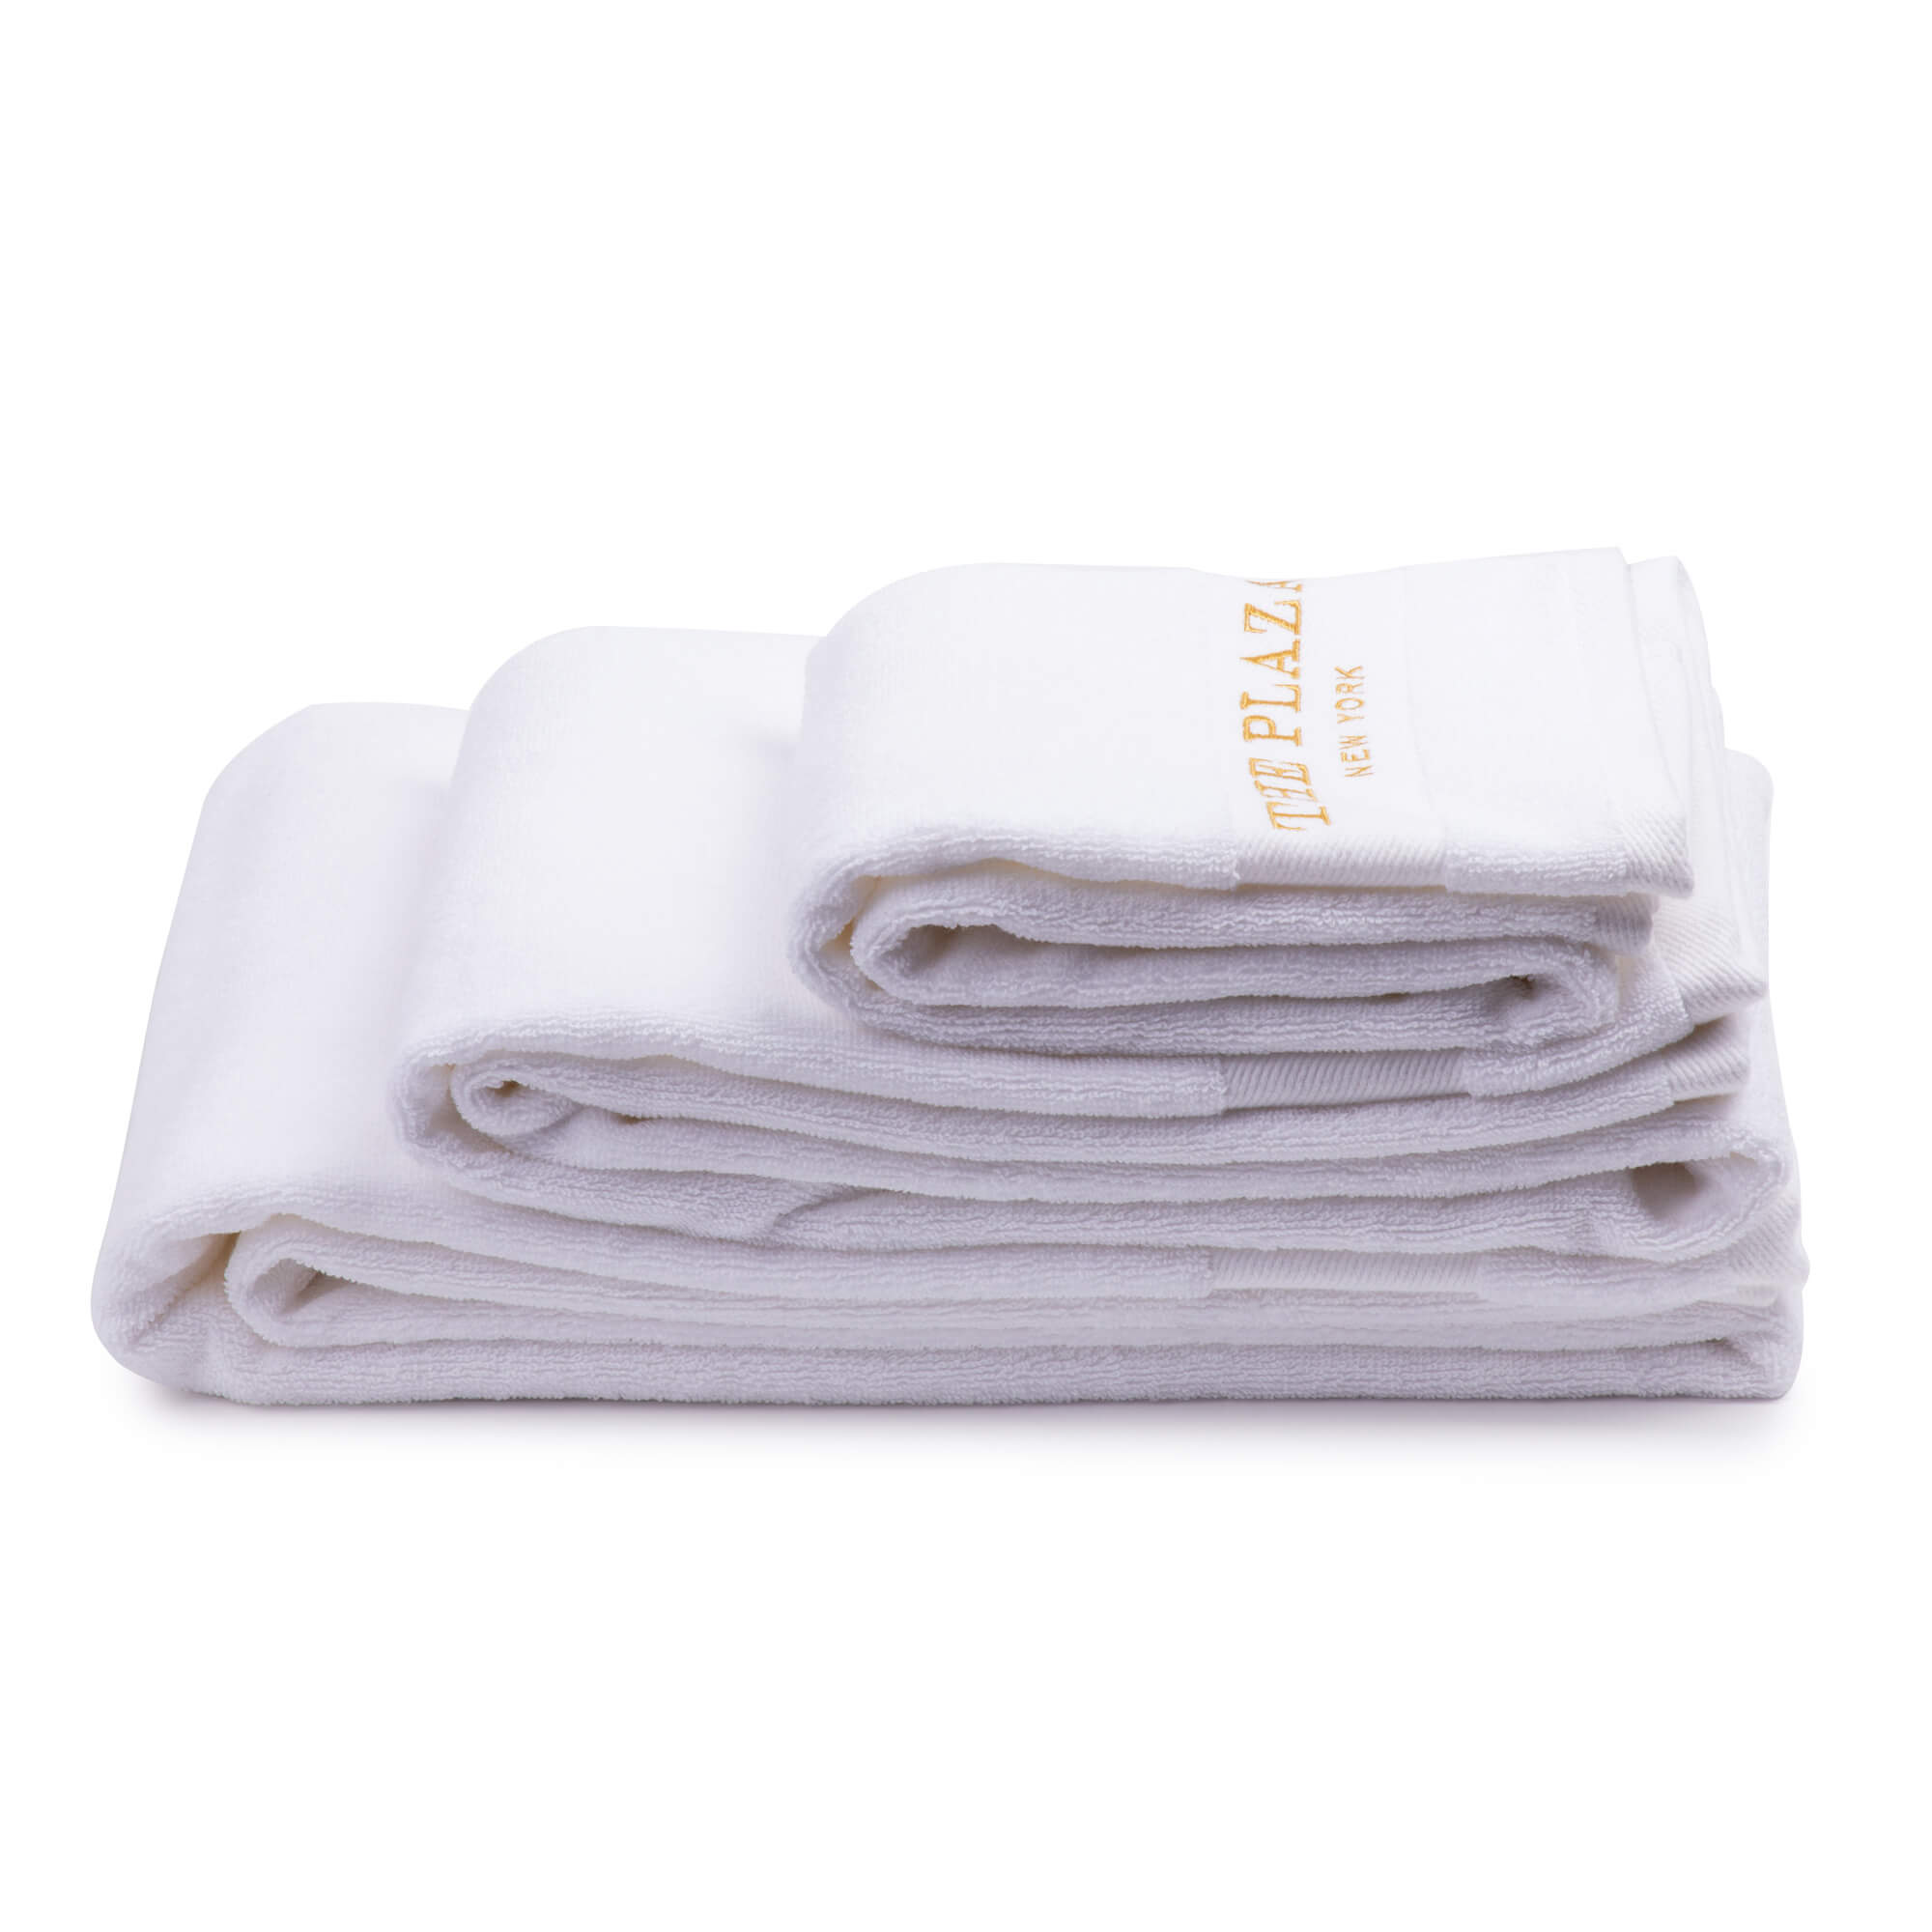 Plaza Bath Towel – The Plaza Hotel